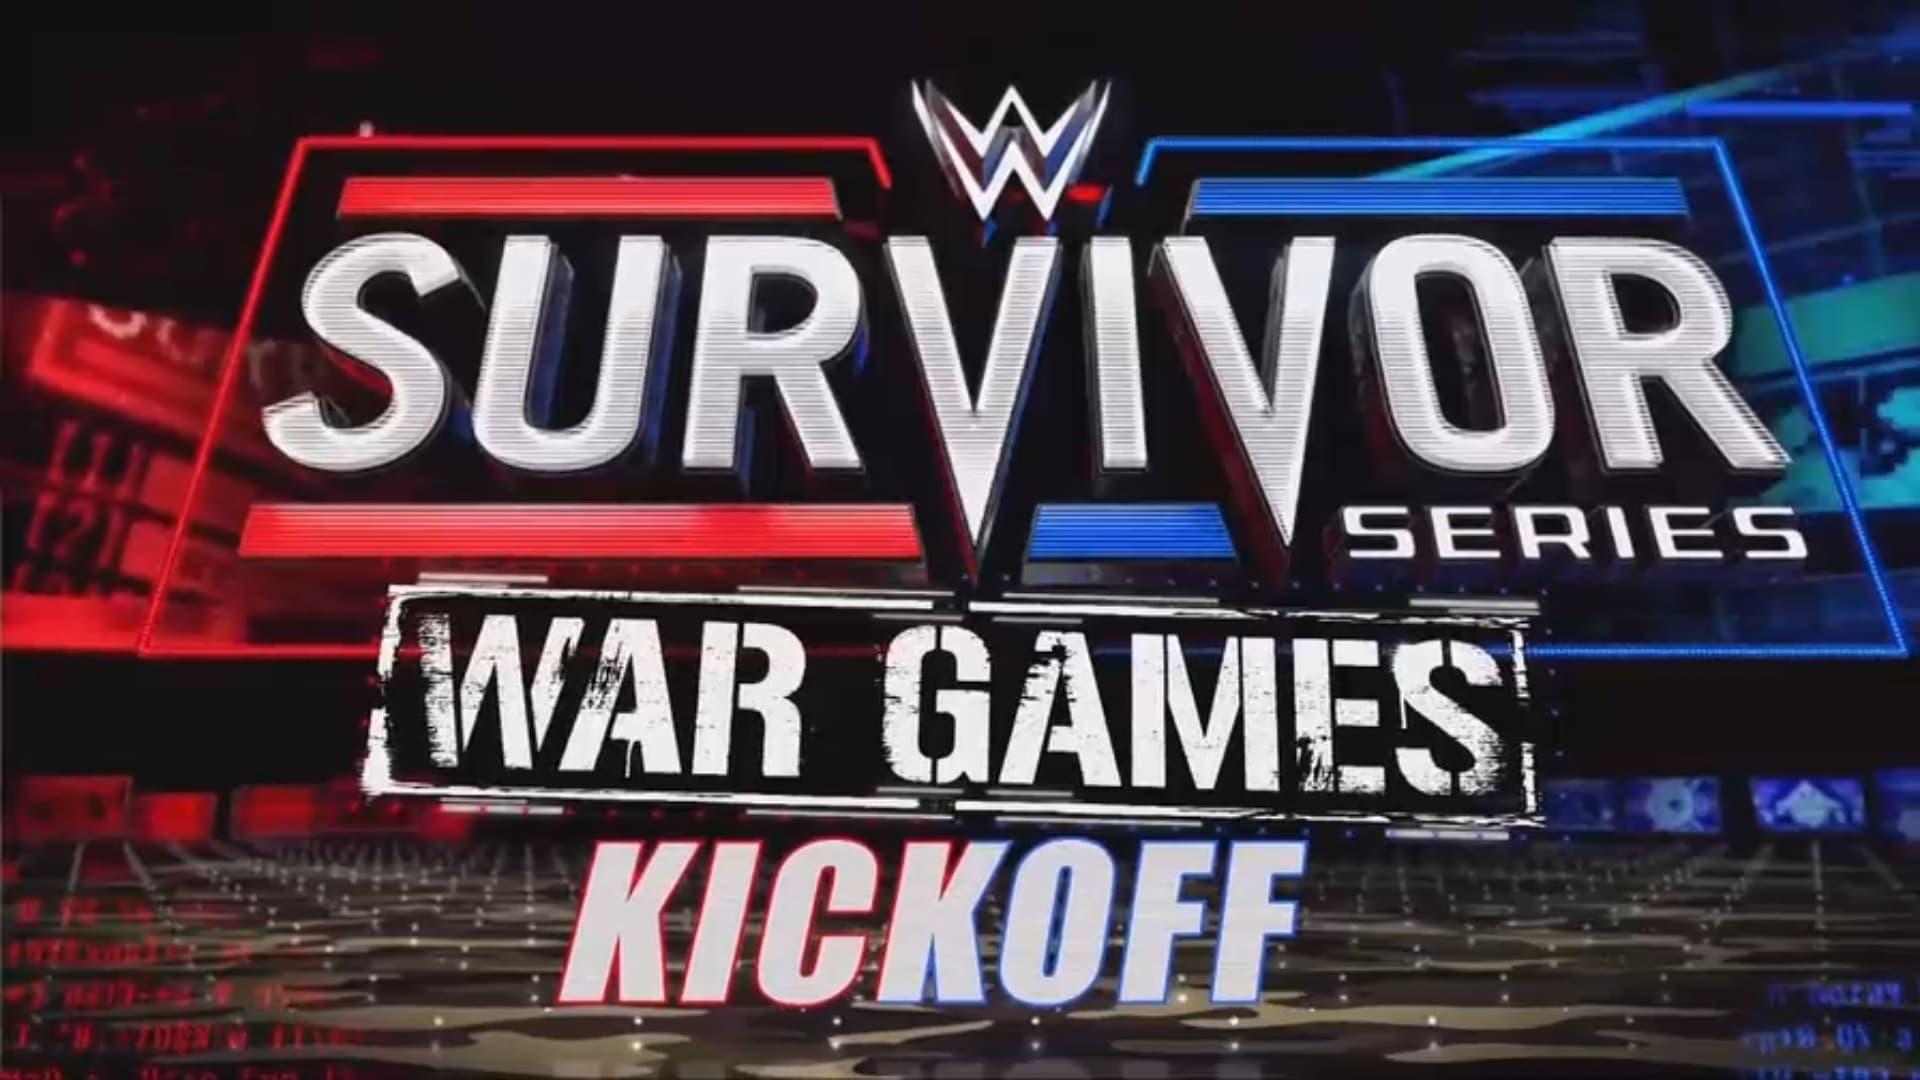 WWE Survivor Series WarGames 2022 Kickoff backdrop